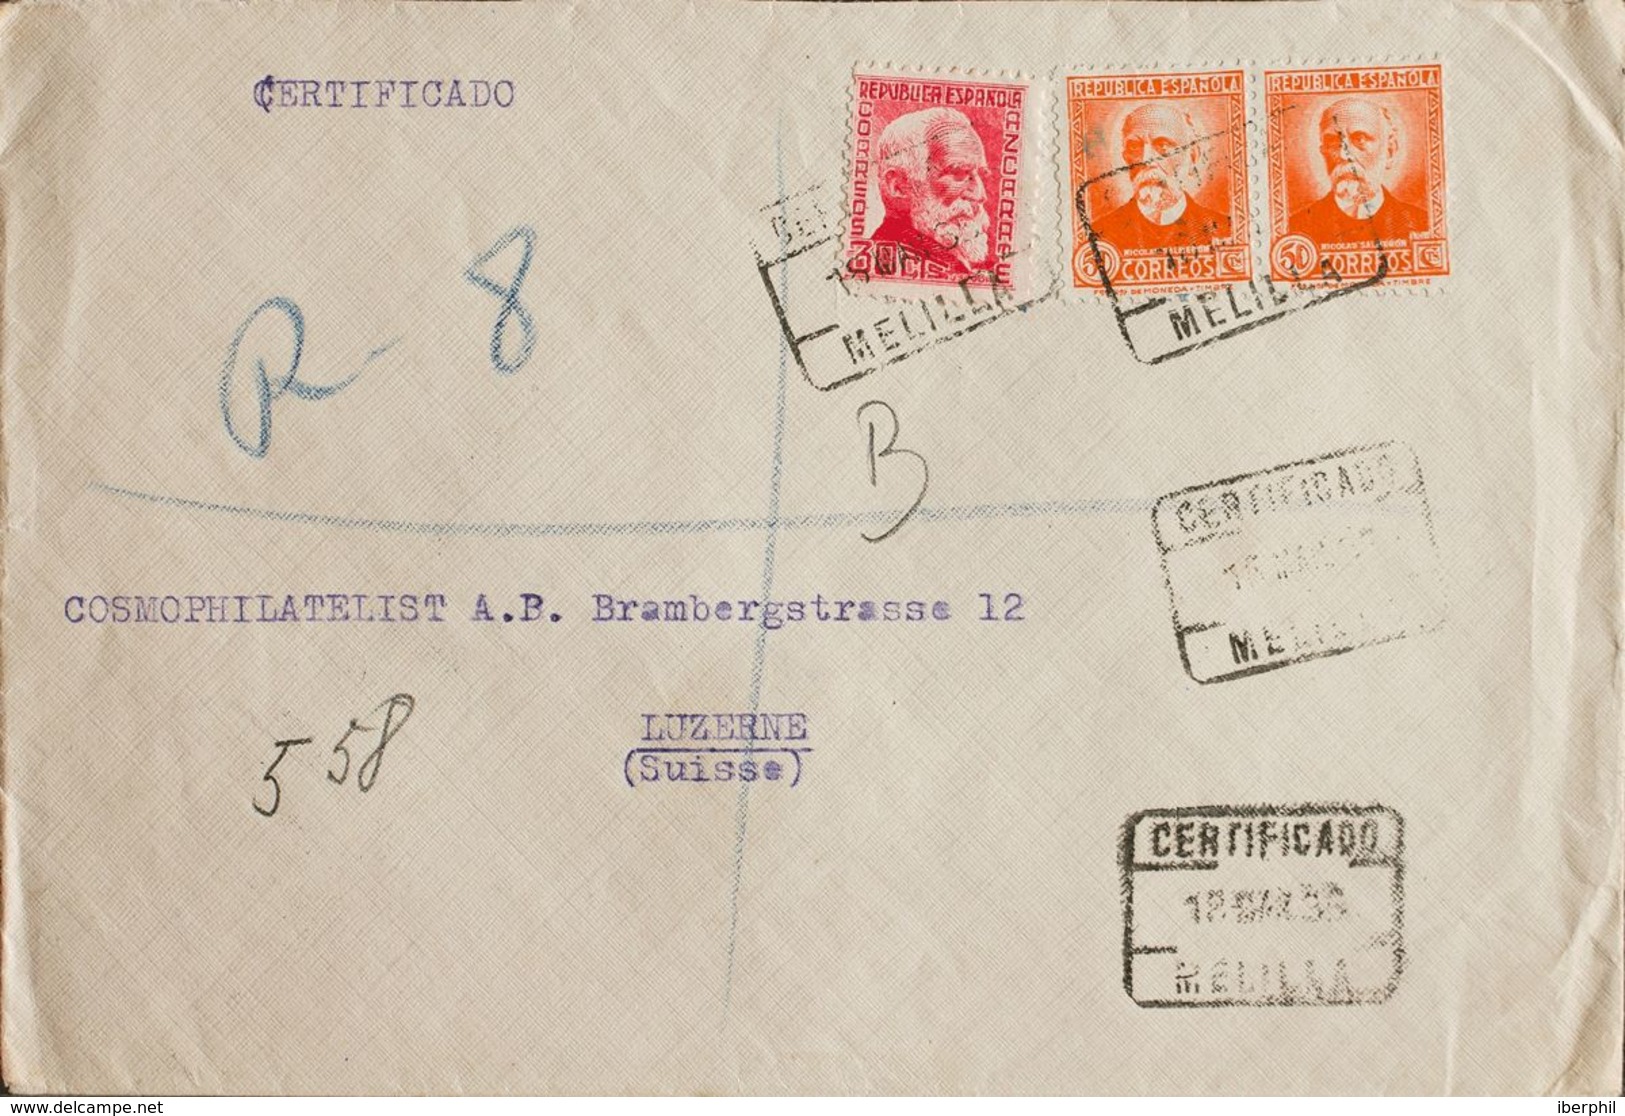 España. República Española Correo Certificado. Sobre 686, 671(2). 1935. 30 Cts Rosa Y 50 Cts Naranja, Dos Sellos. Certif - Cartas & Documentos